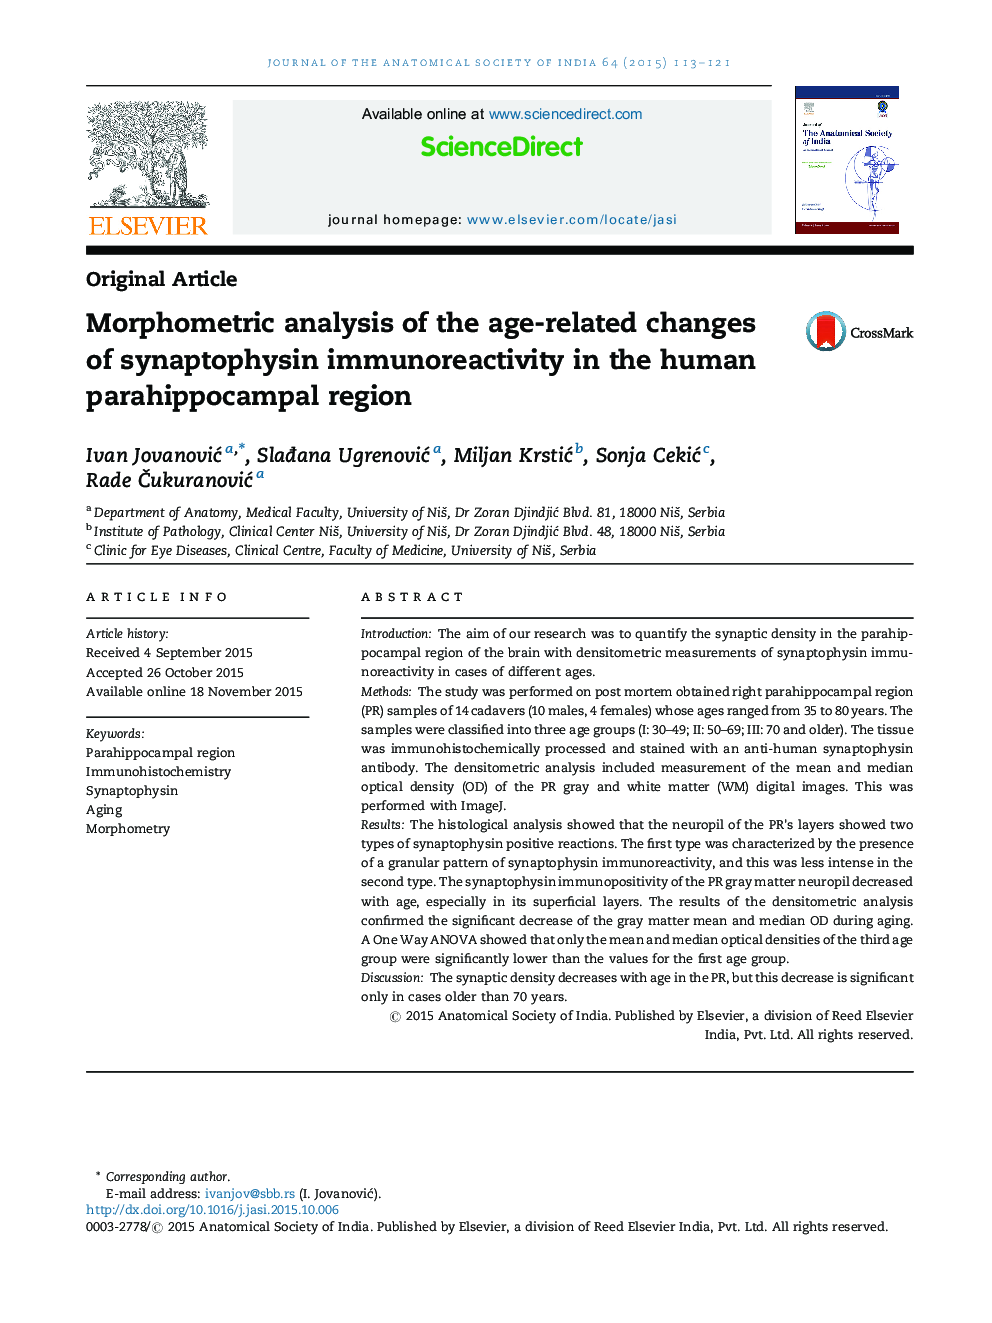 تجزیه و تحلیل مورفومتریک تغییرات مرتبط با سن ایمونوآرژیک سیناپتوفیزین در منطقه پاراه آیپکامپال انسان 